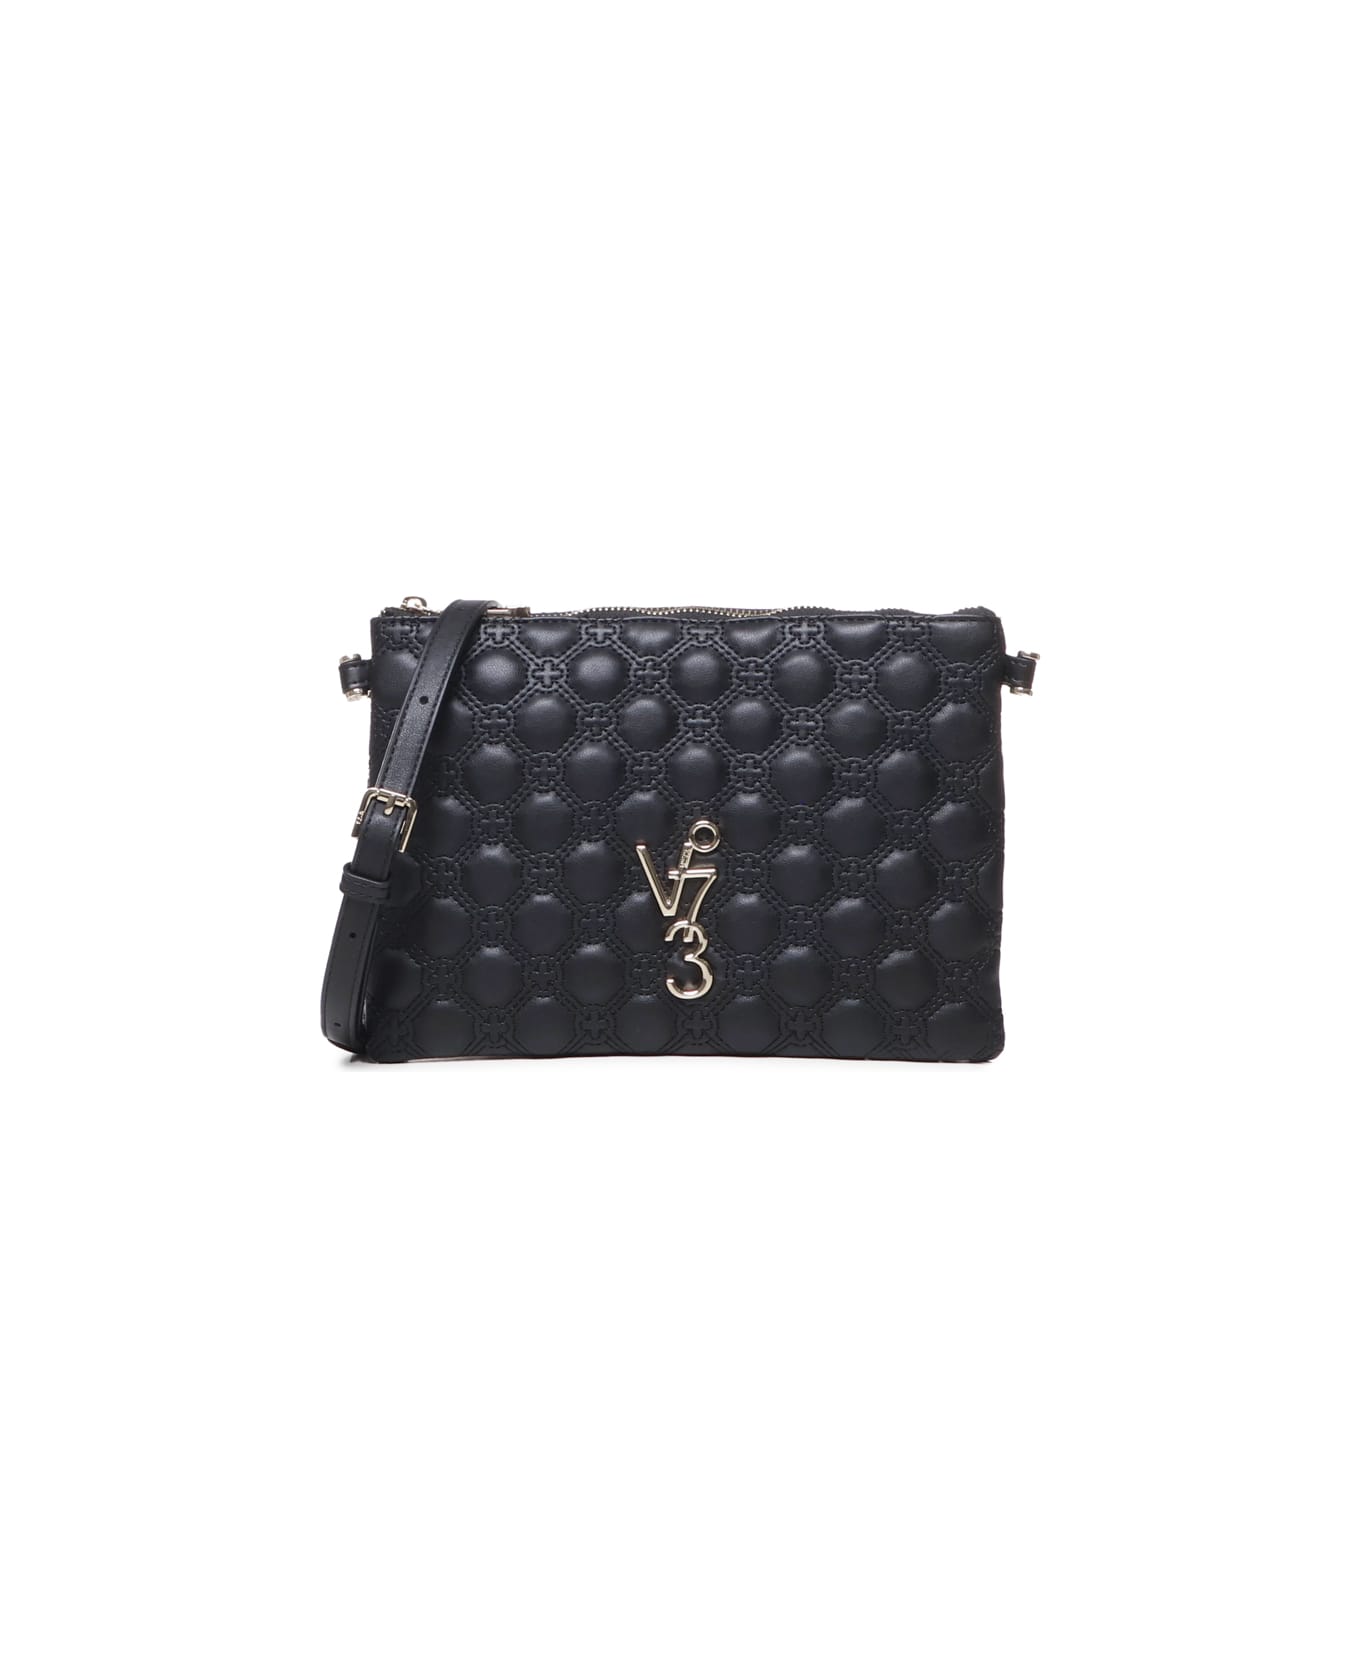 V73 Eva Quilted Shoulder Bag - Black